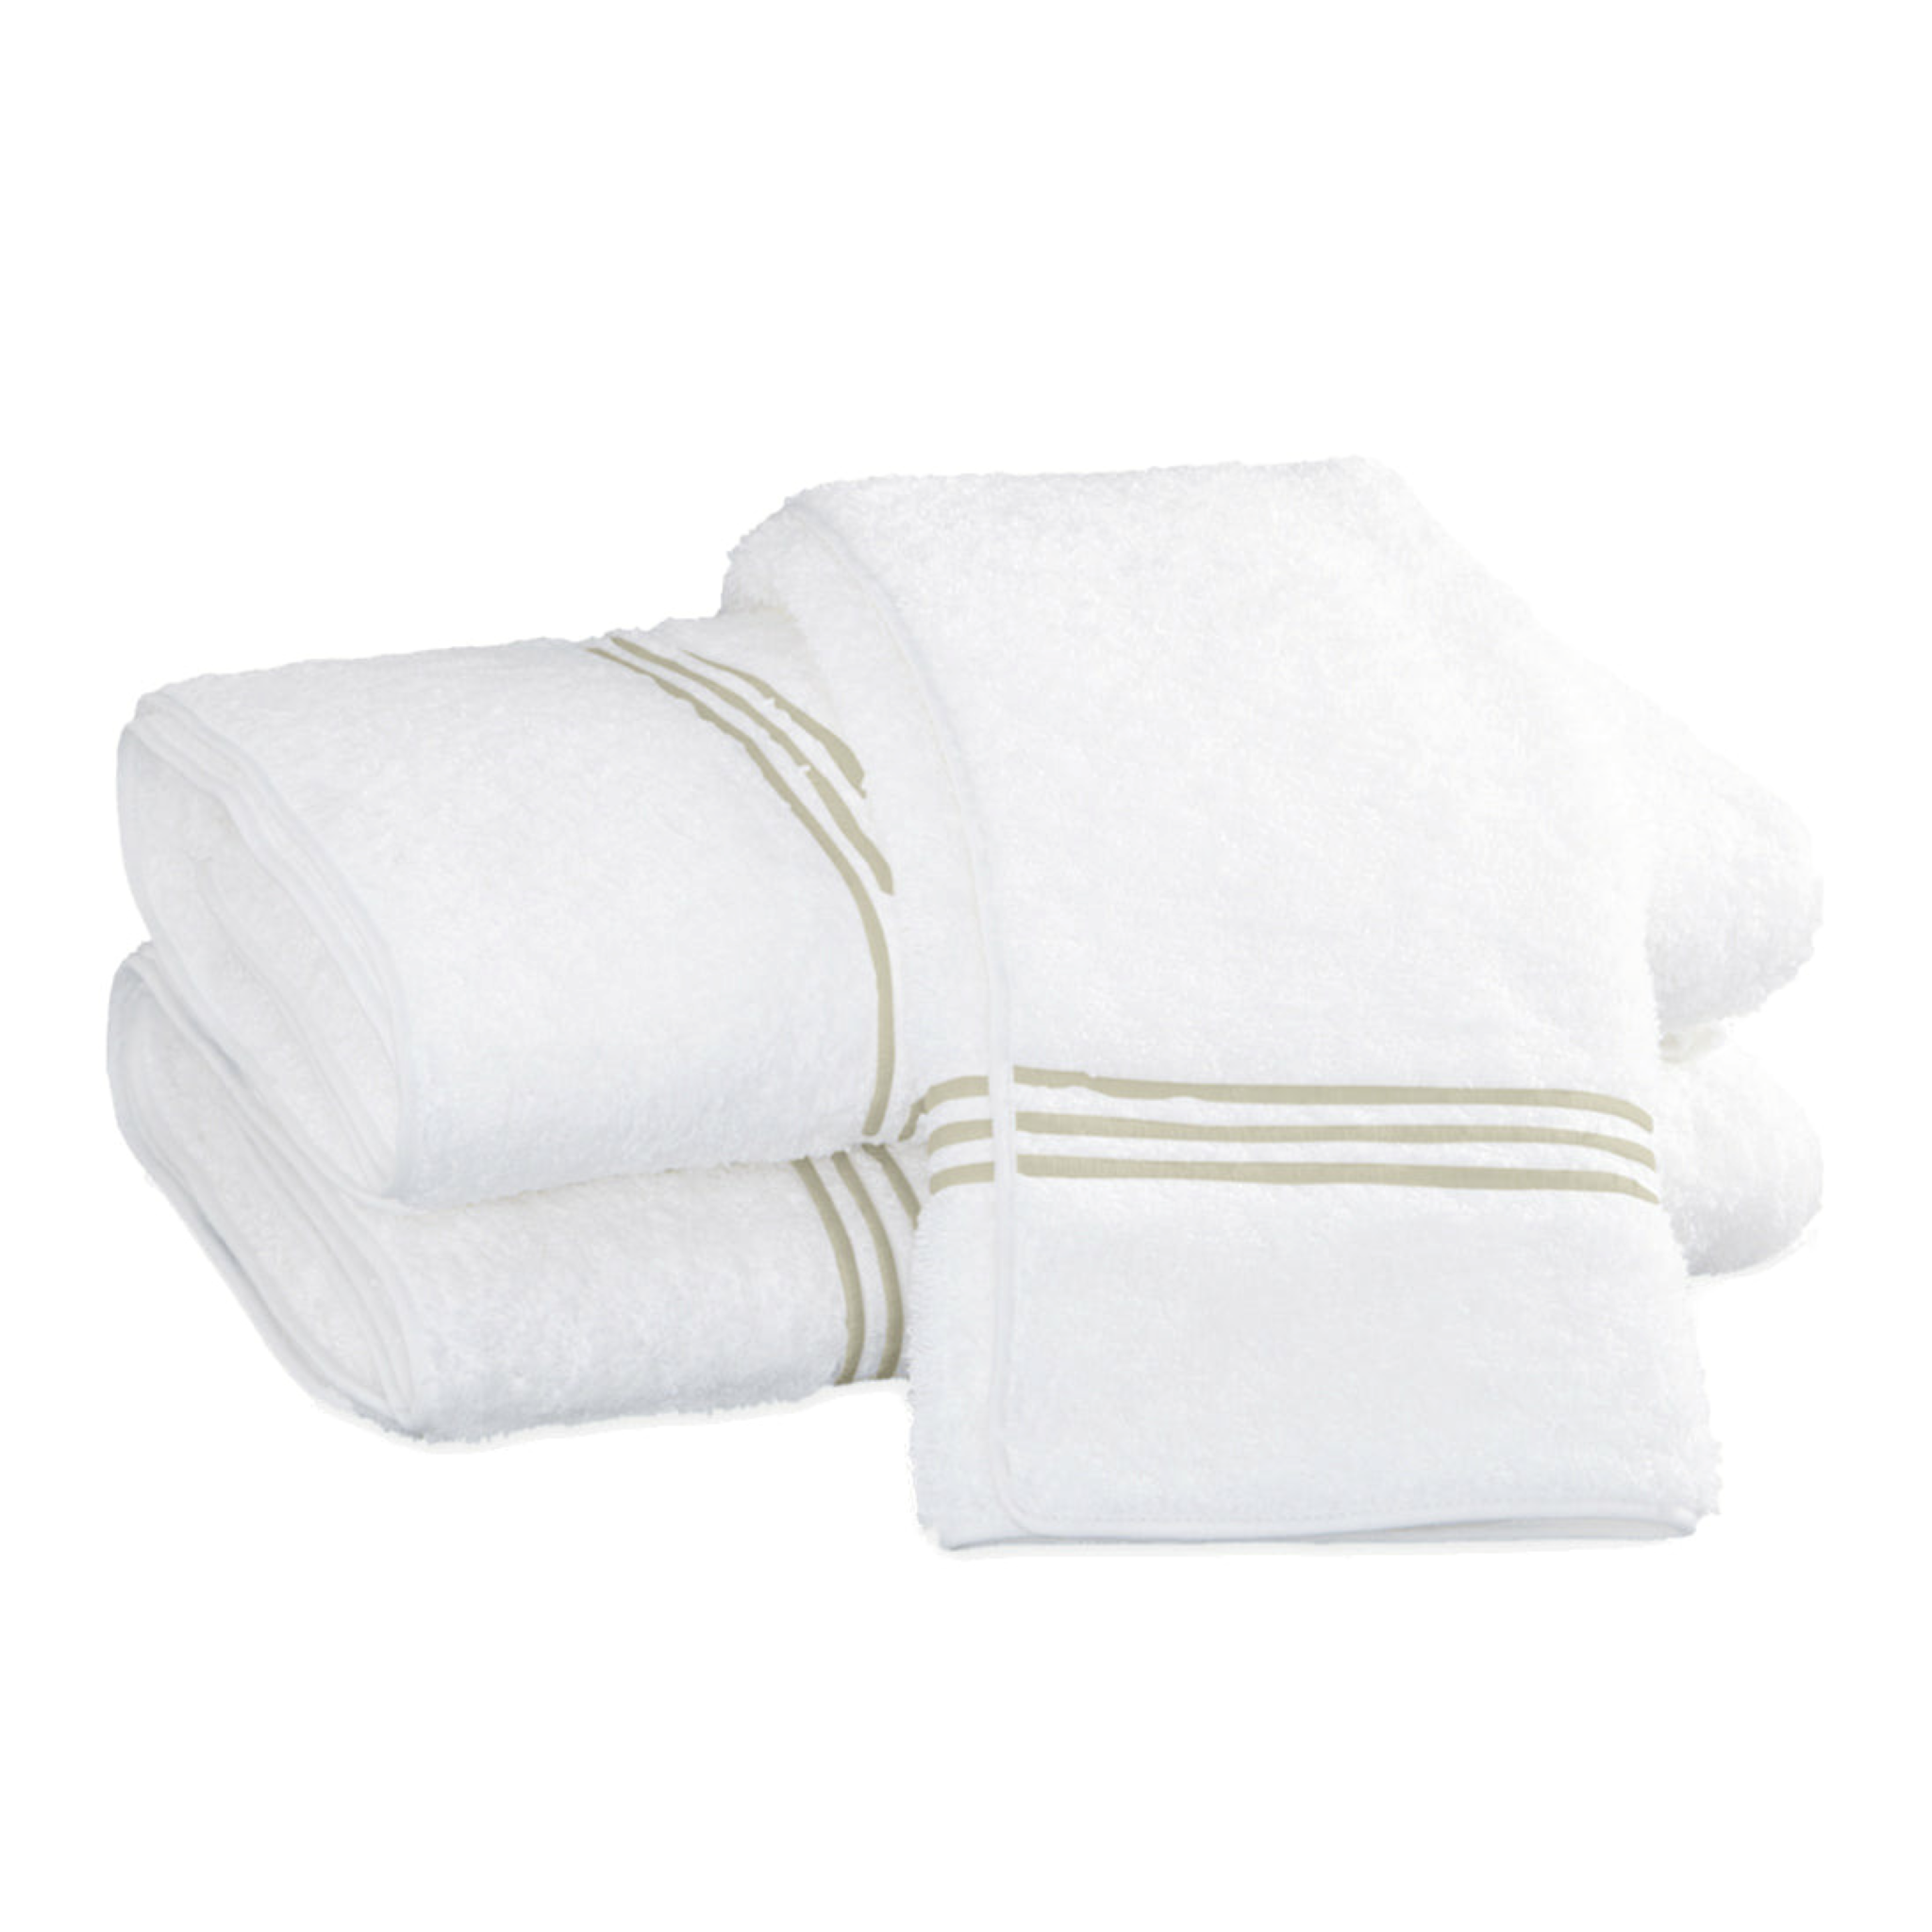 https://flandb.com/cdn/shop/files/Matouk-Bel-Tempo-Bath-Towels-Almond_2048x.png?v=1686466092